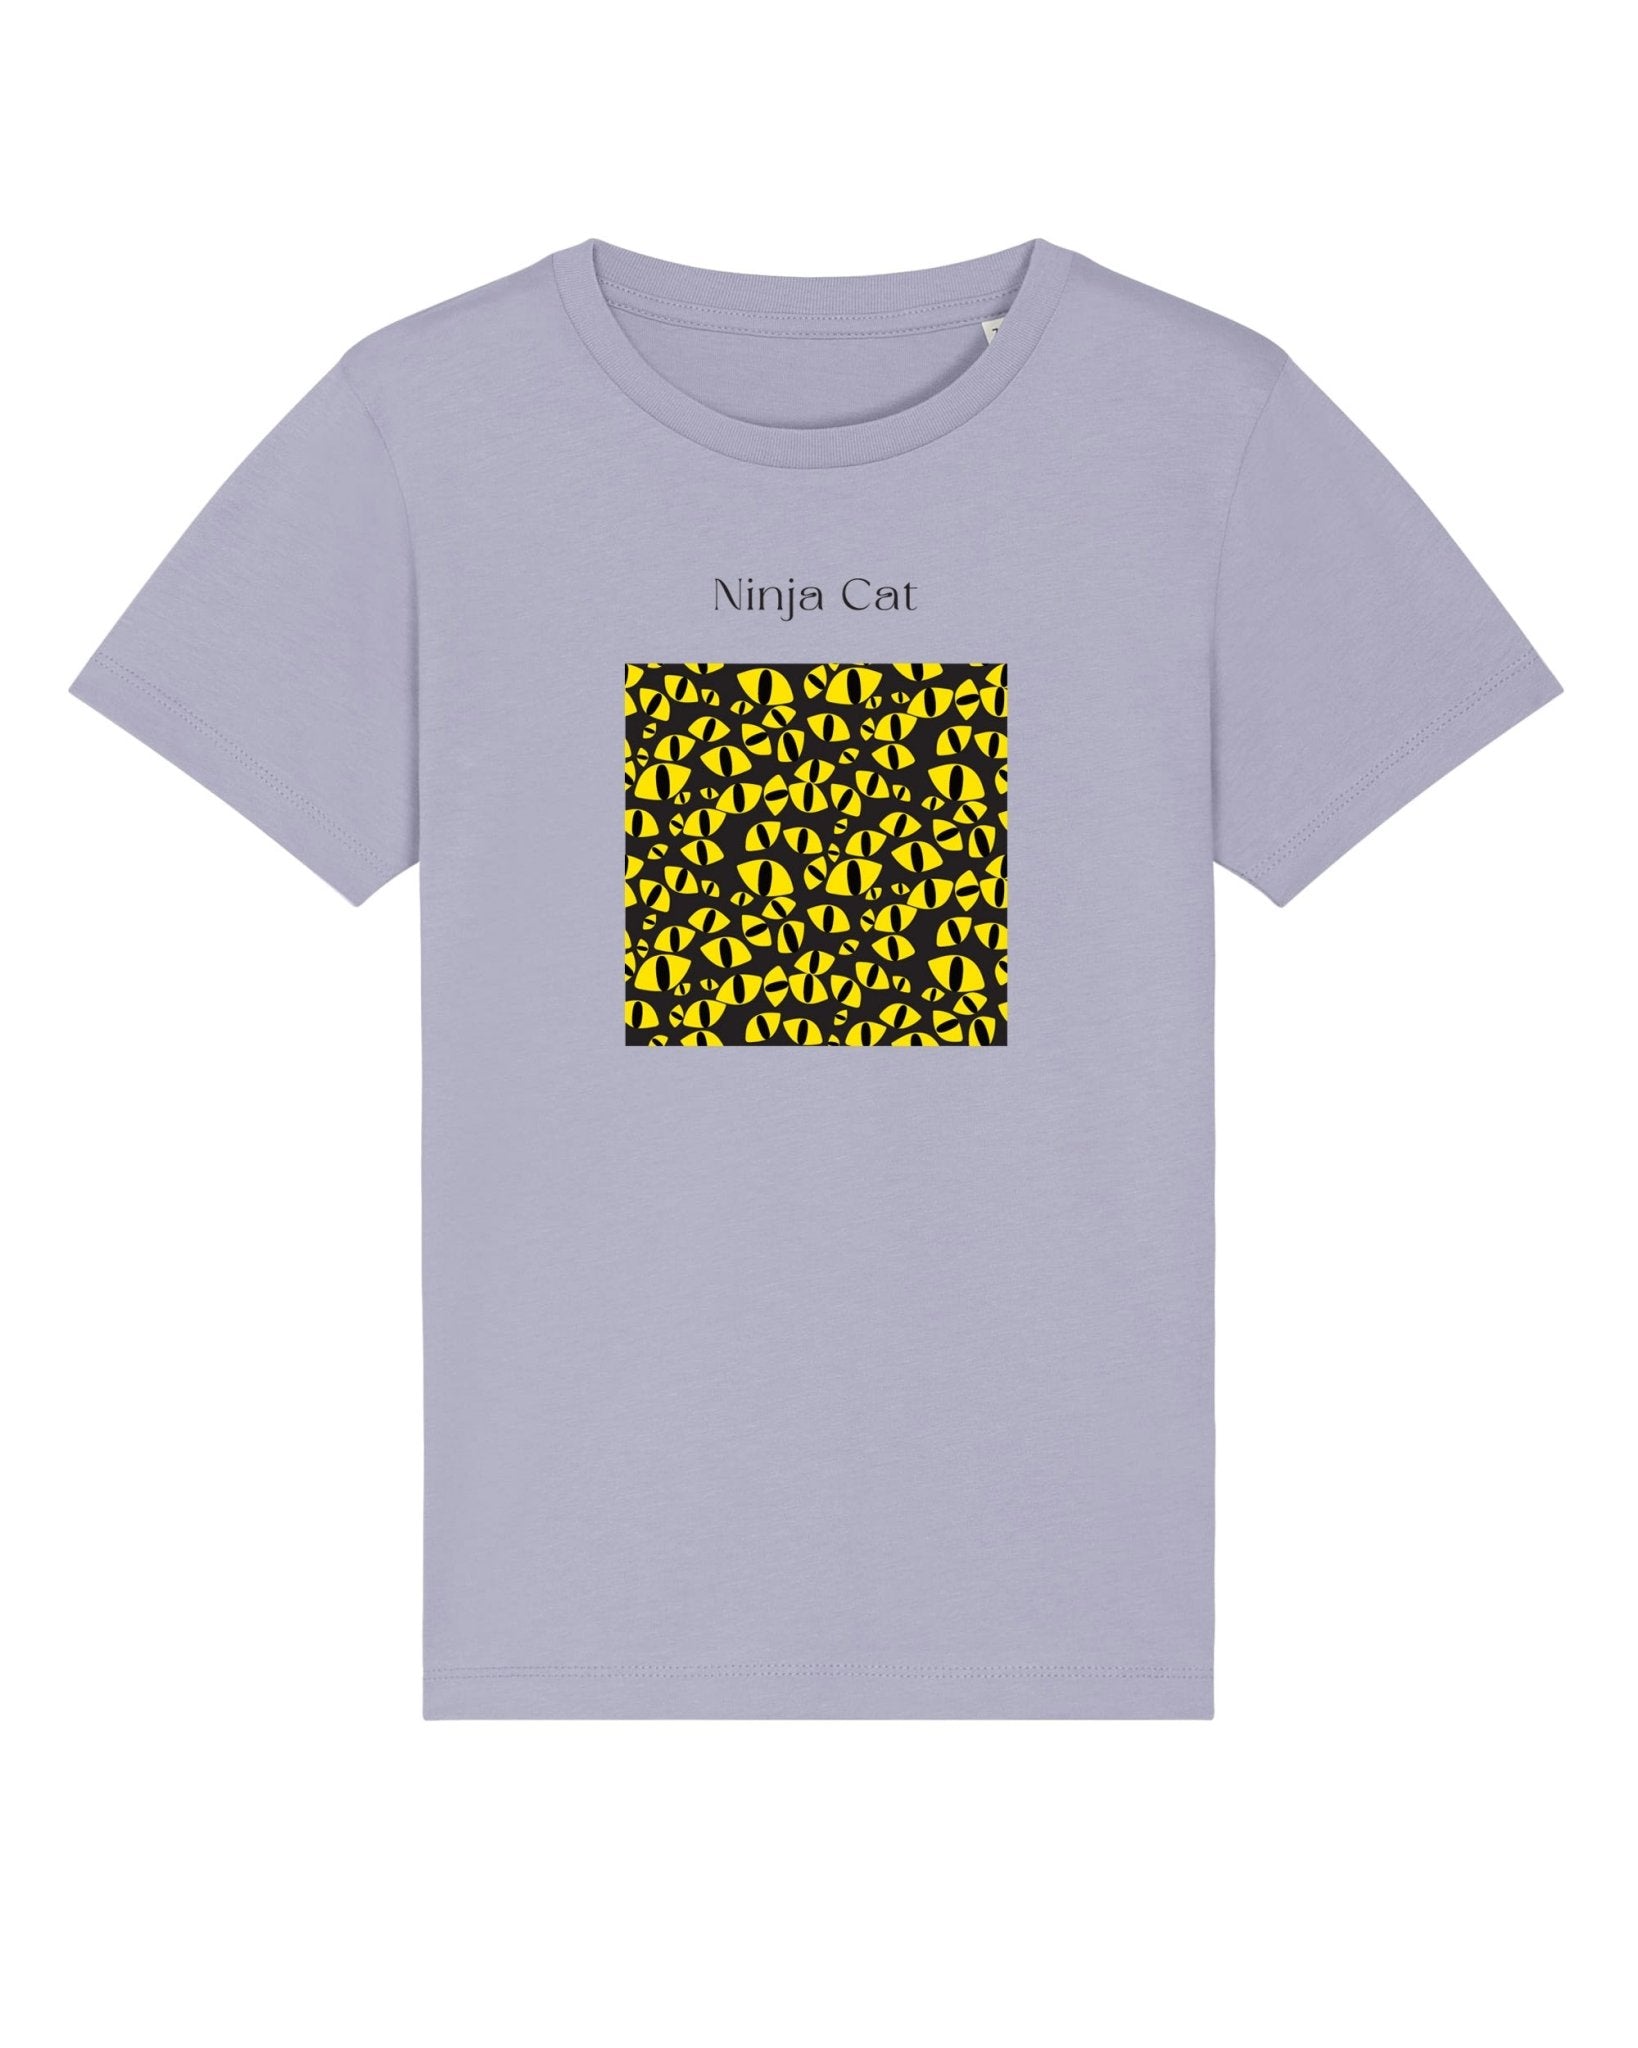 Organic Cotton 'Ninja Cat' Kids Funny Cat T-shirt - Funny Animal Shirt